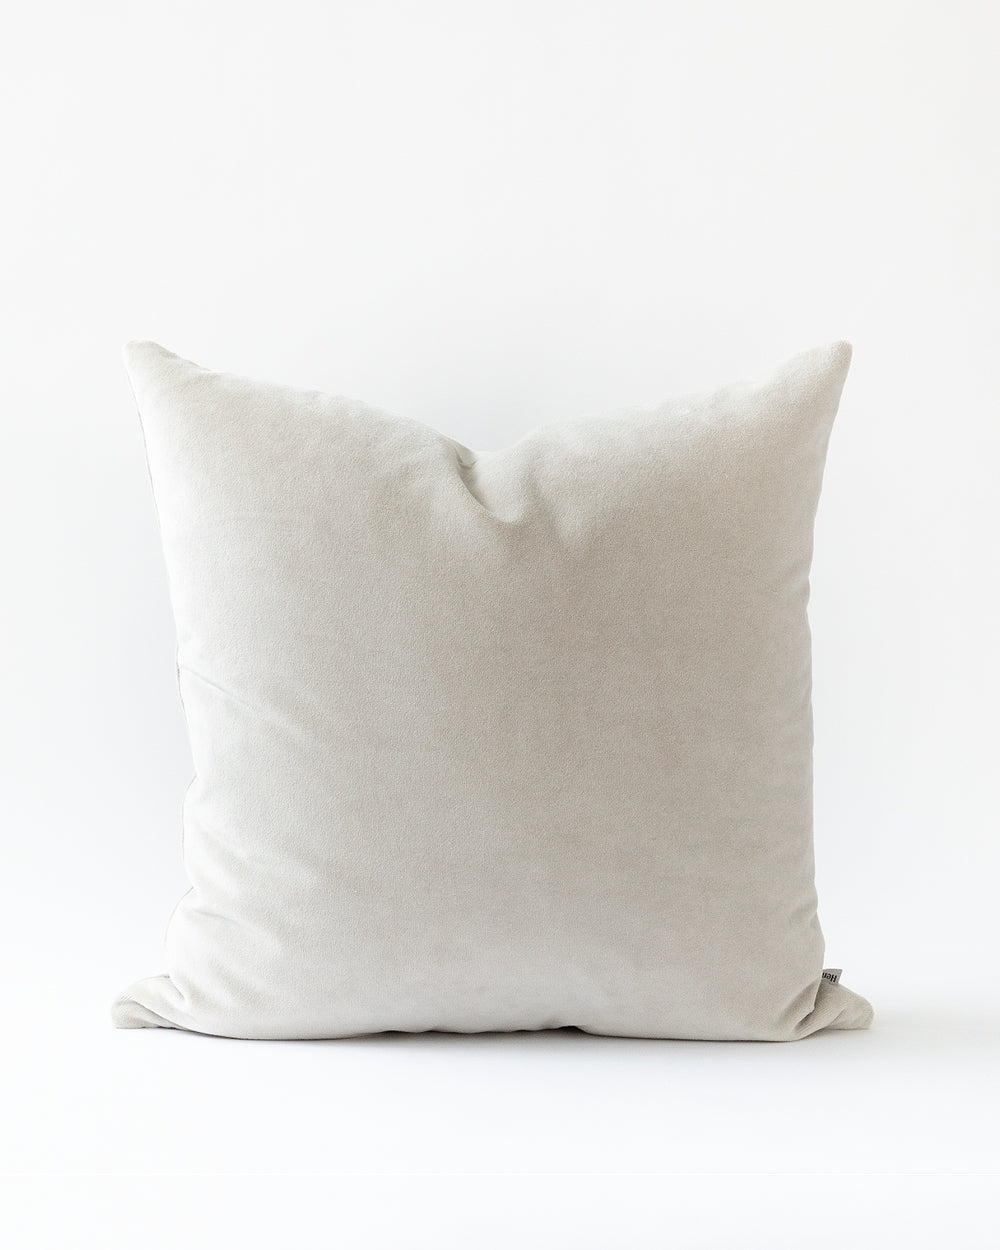 Warm grey velvet pillow